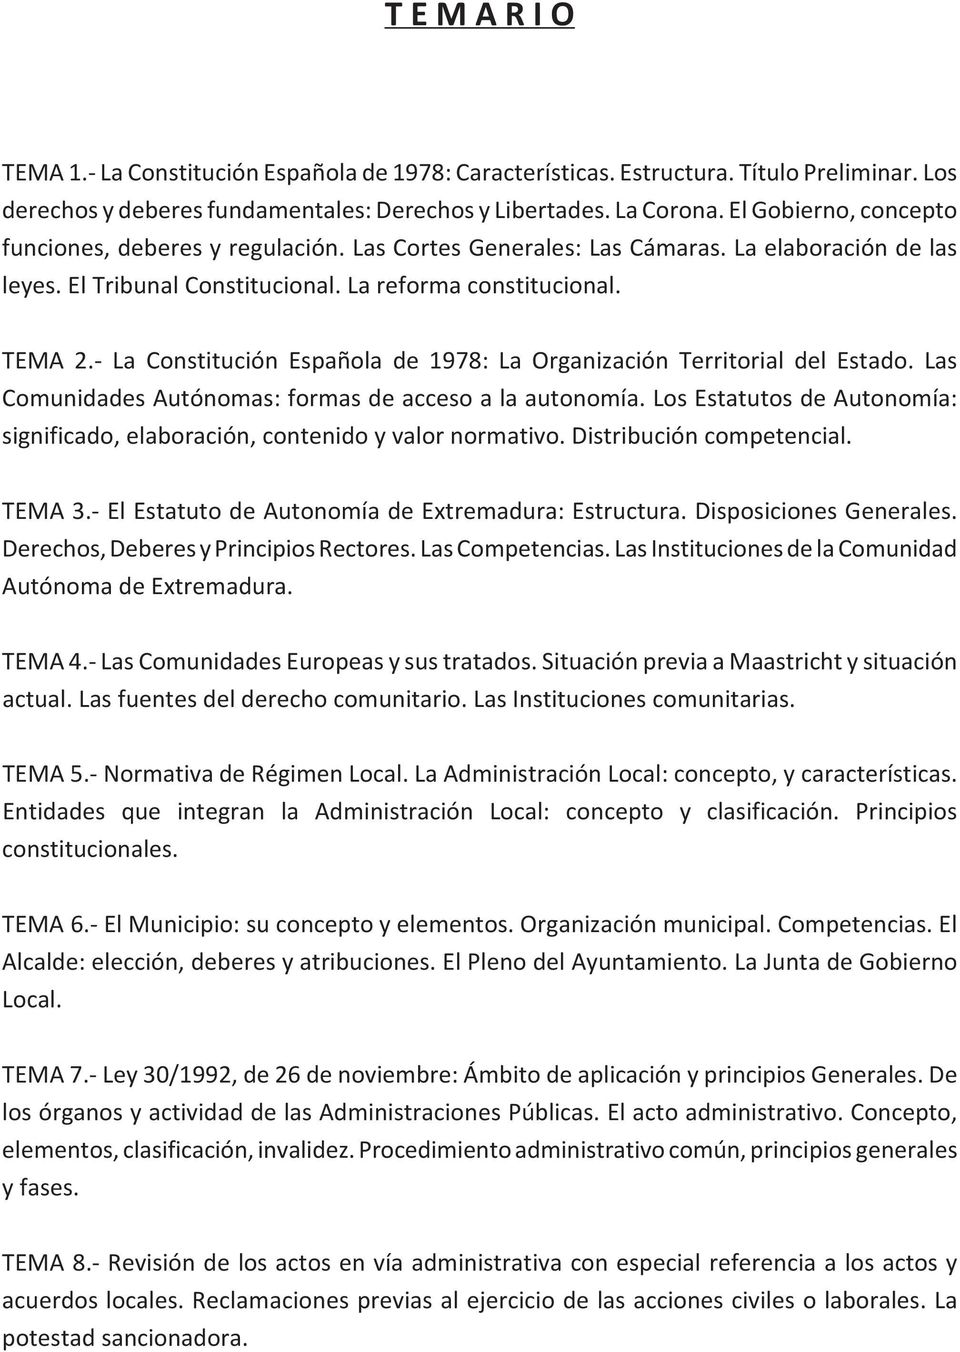 La Constitución Española de 1978: La Organización Territorial del Estado. Las Comunidades Autónomas: formas de acceso a la autonomía.